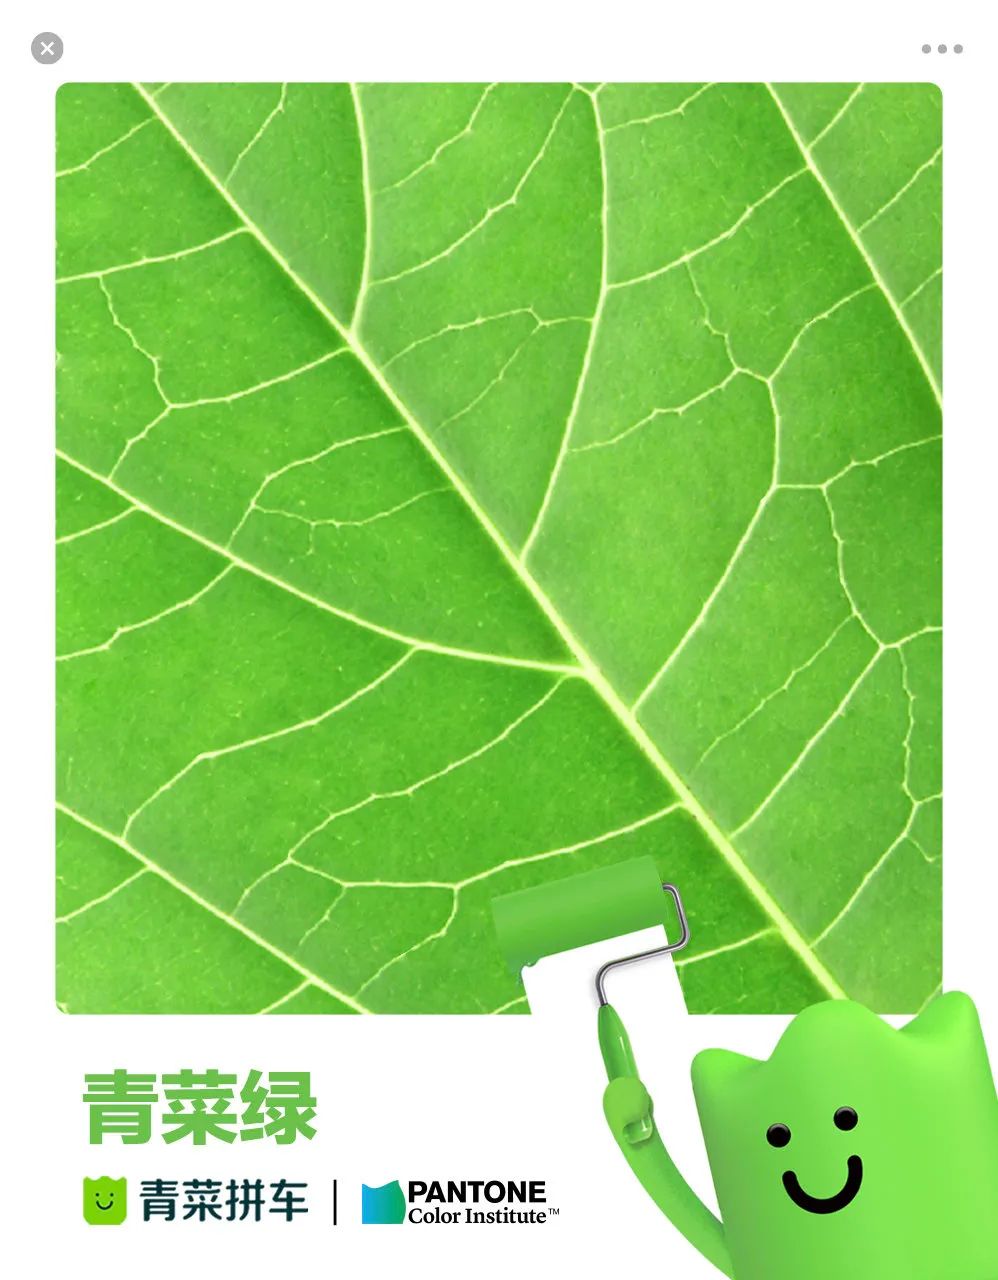 青菜拼车 × Pantone 联合发布环保品牌色